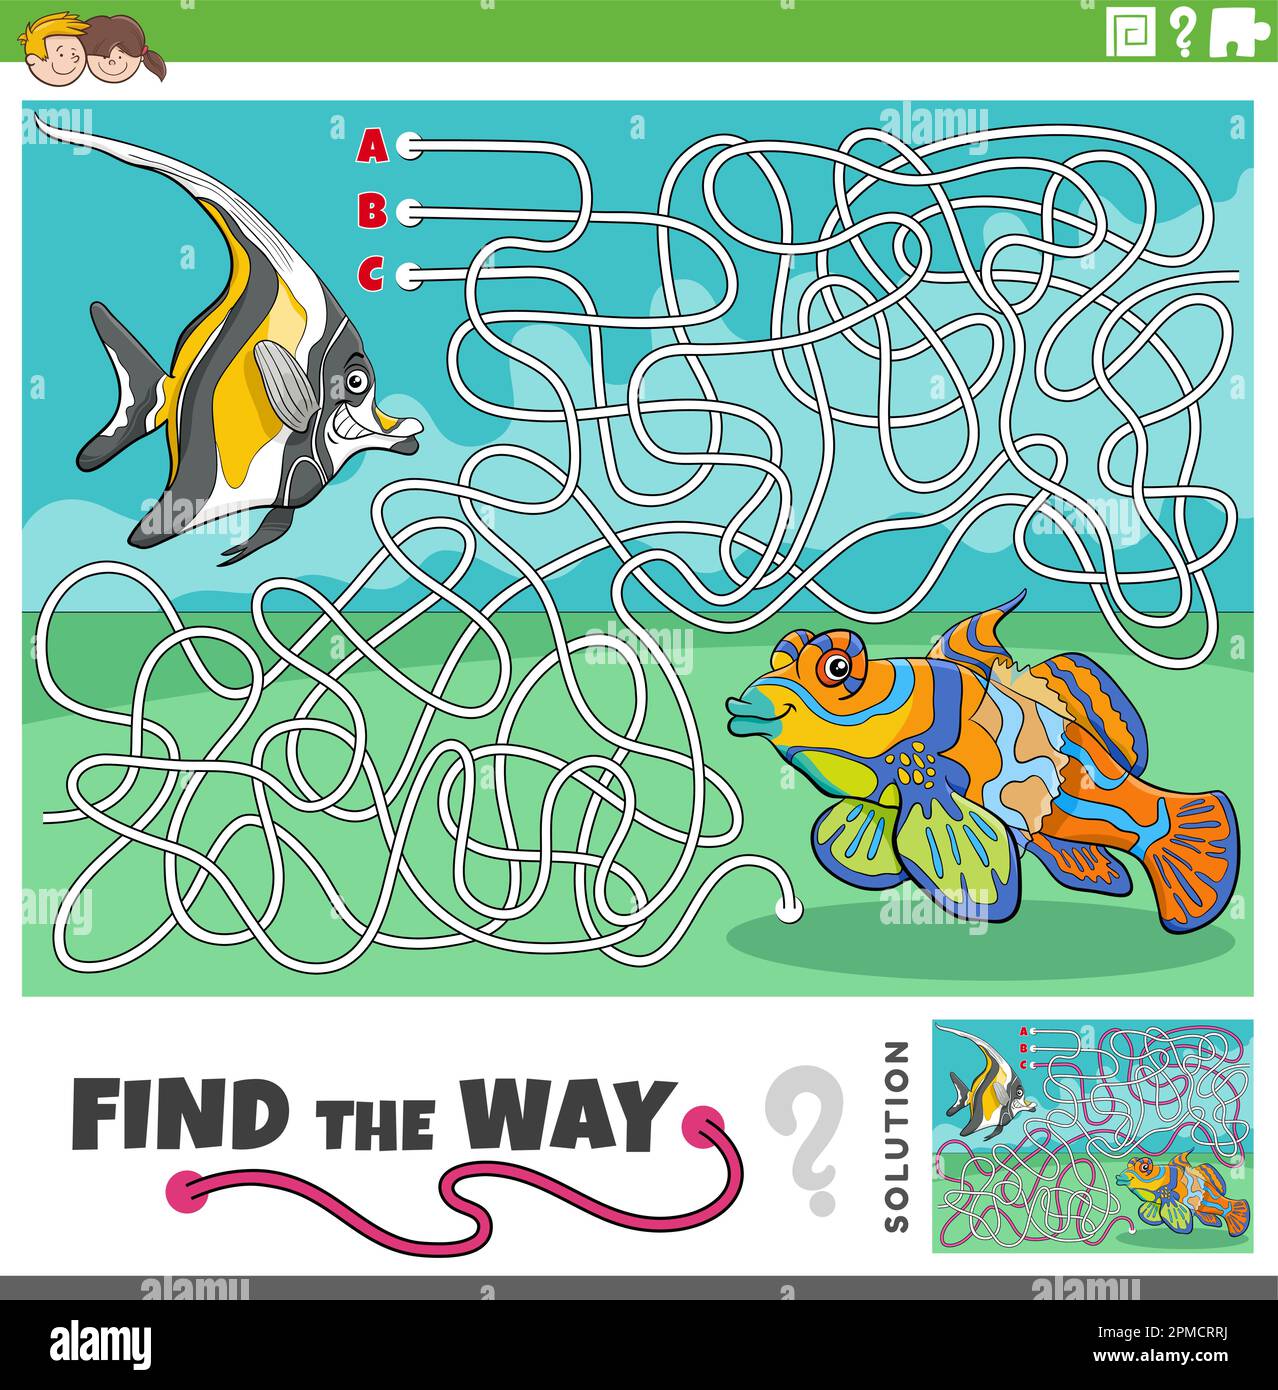 Illustration de dessin animé de trouver le chemin labyrinthe jeu de puzzle avec les personnages animaux marins de poissons drôles Illustration de Vecteur